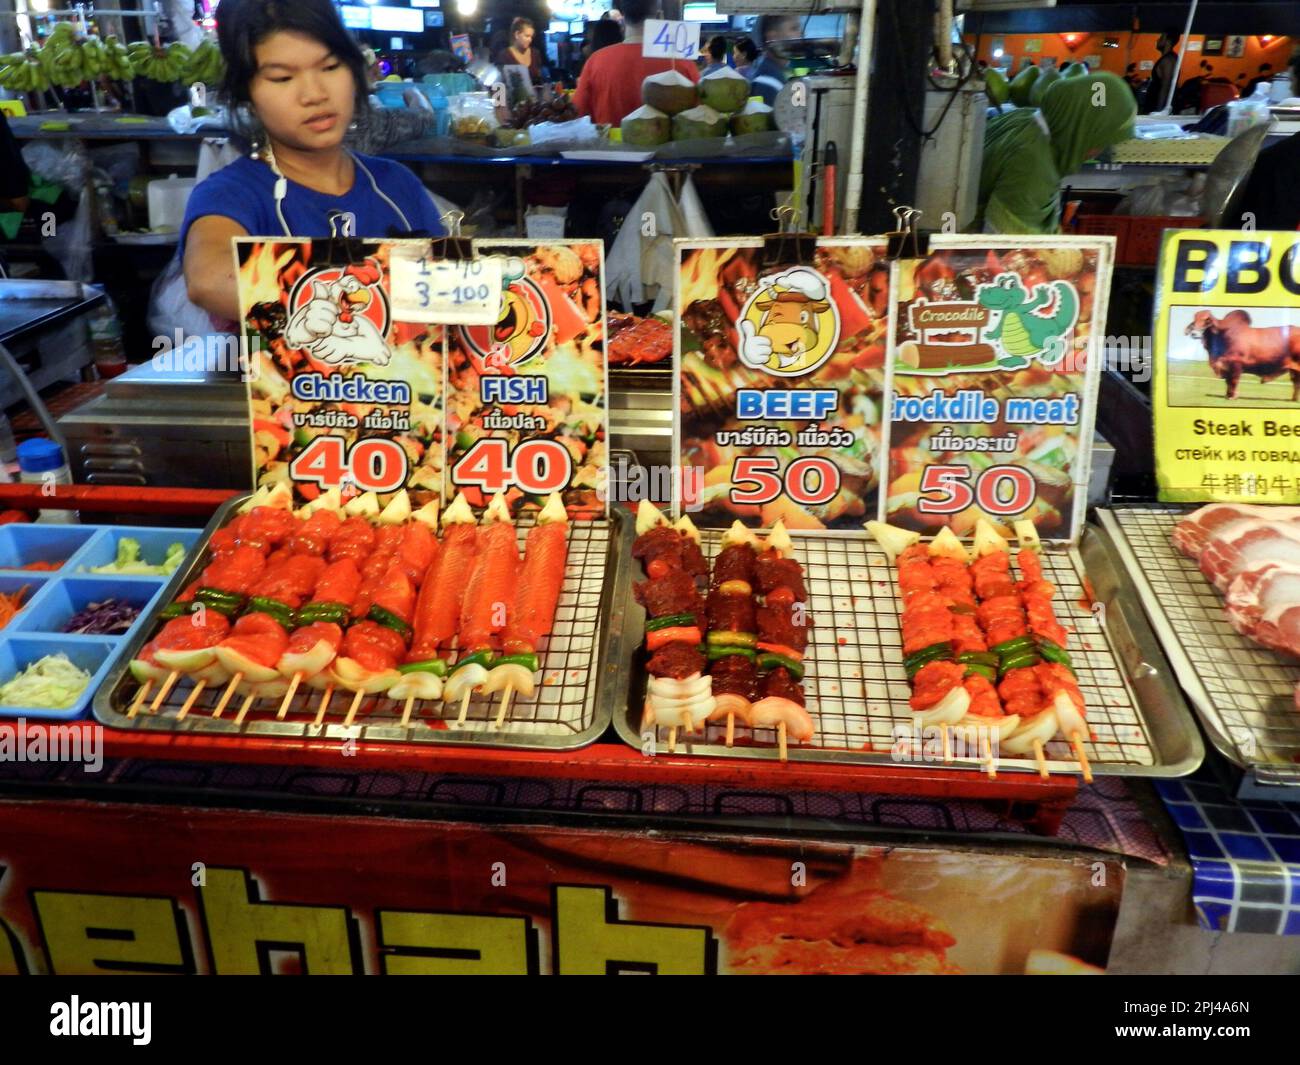 Thailandia, Isola di Phuket, Spiaggia di Patong: Il mercato notturno offre una vasta gamma di cibo e spuntini, tra cui pollo, pesce, manzo e carne di coccodrillo Foto Stock